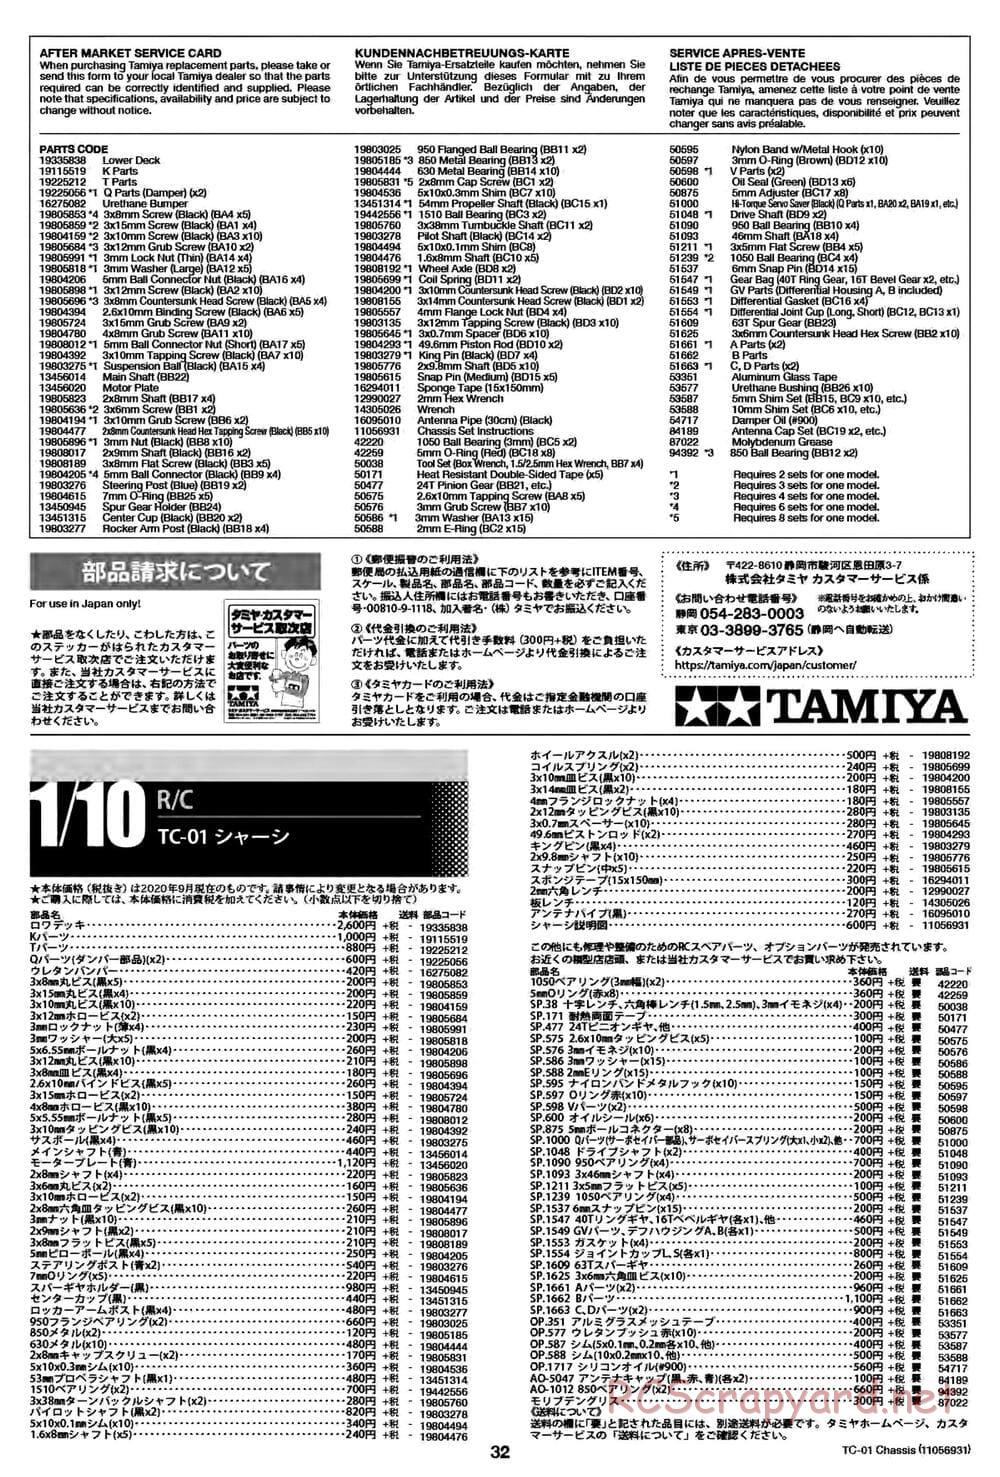 Tamiya - TC-01 Chassis - Manual - Page 32